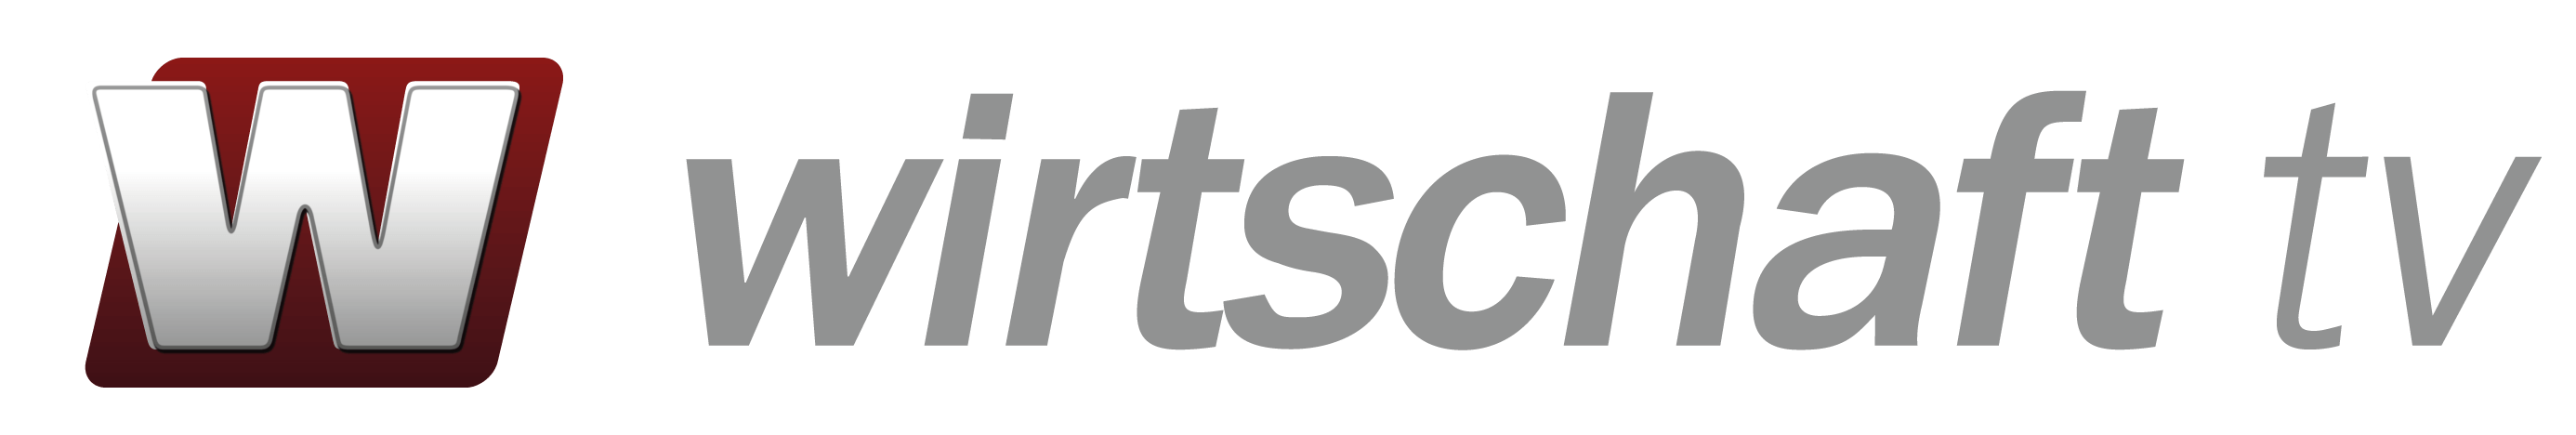 Wirtschaft TV Logo komprimiert